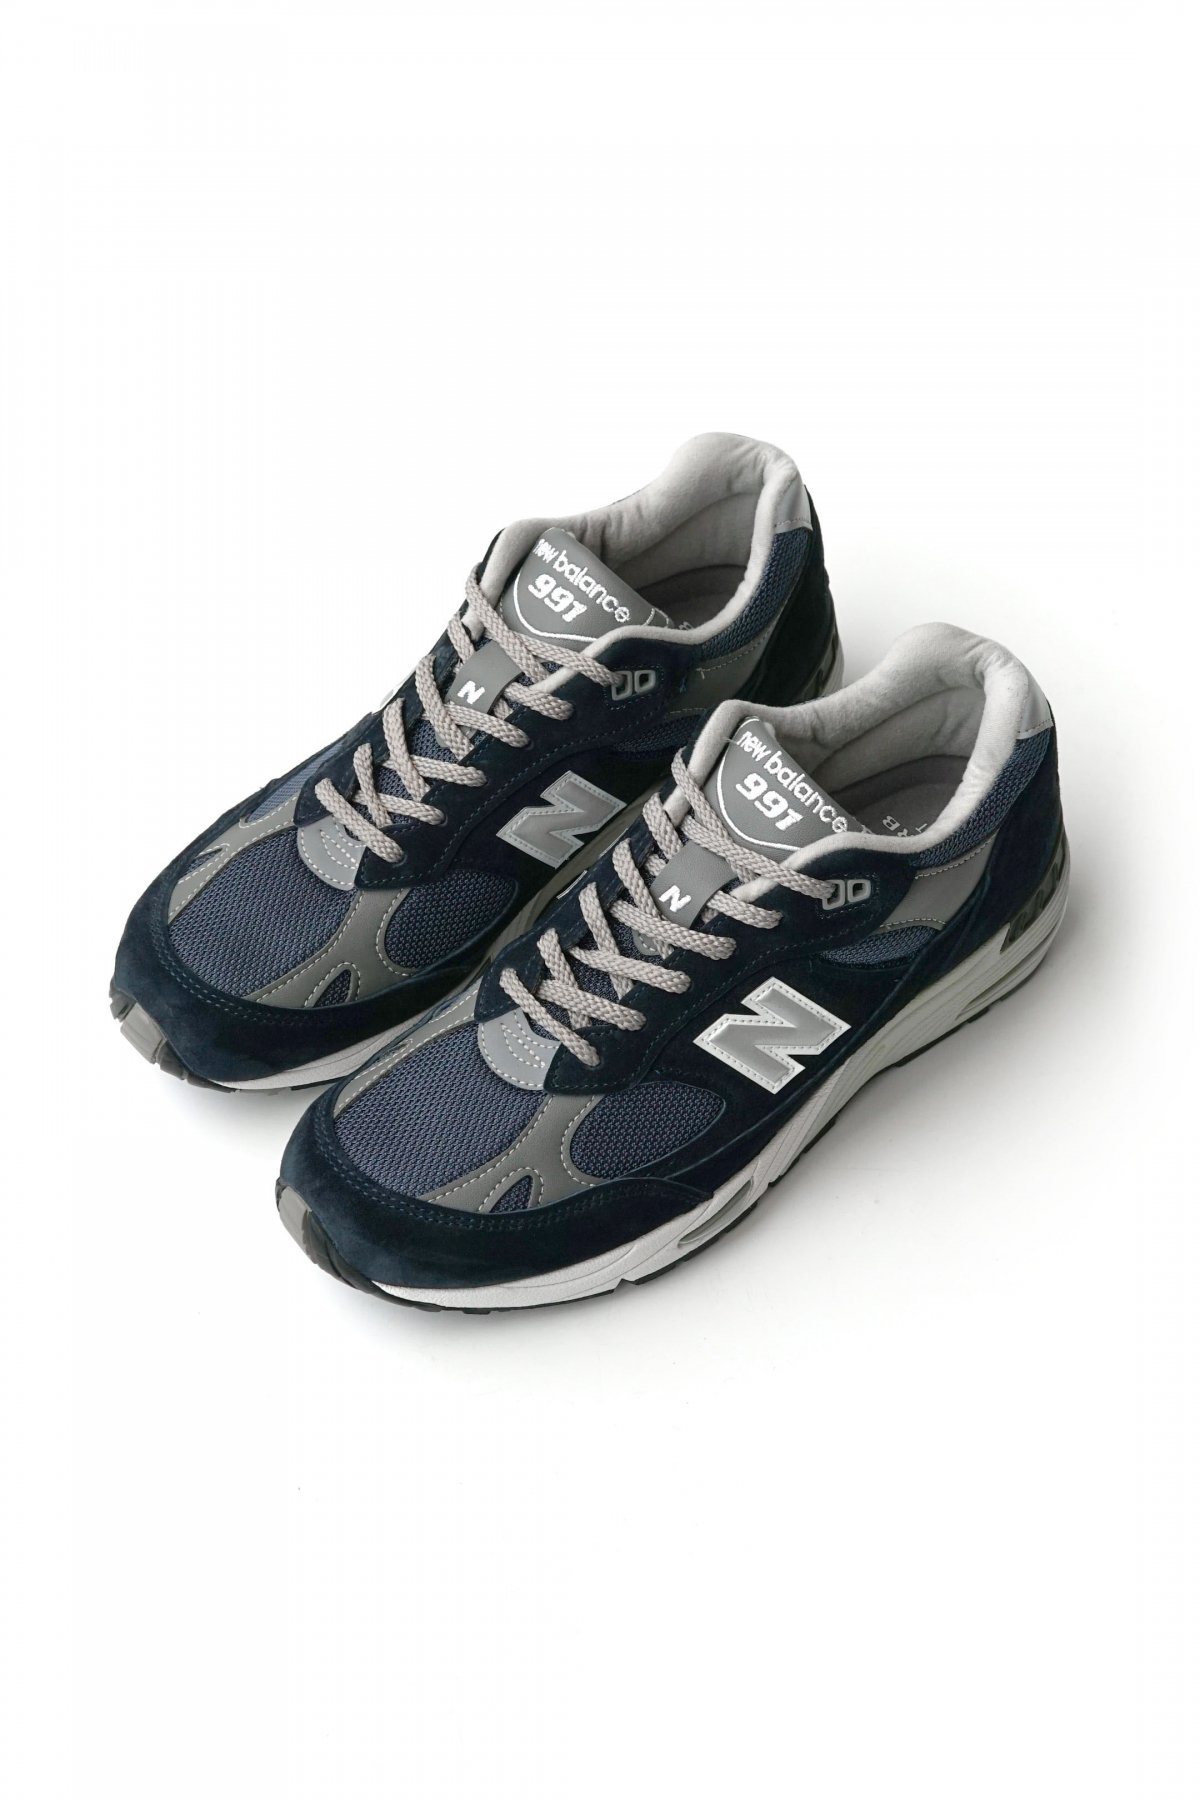 メンズ靴幅New Balance　M991 NV ニューバランス　991